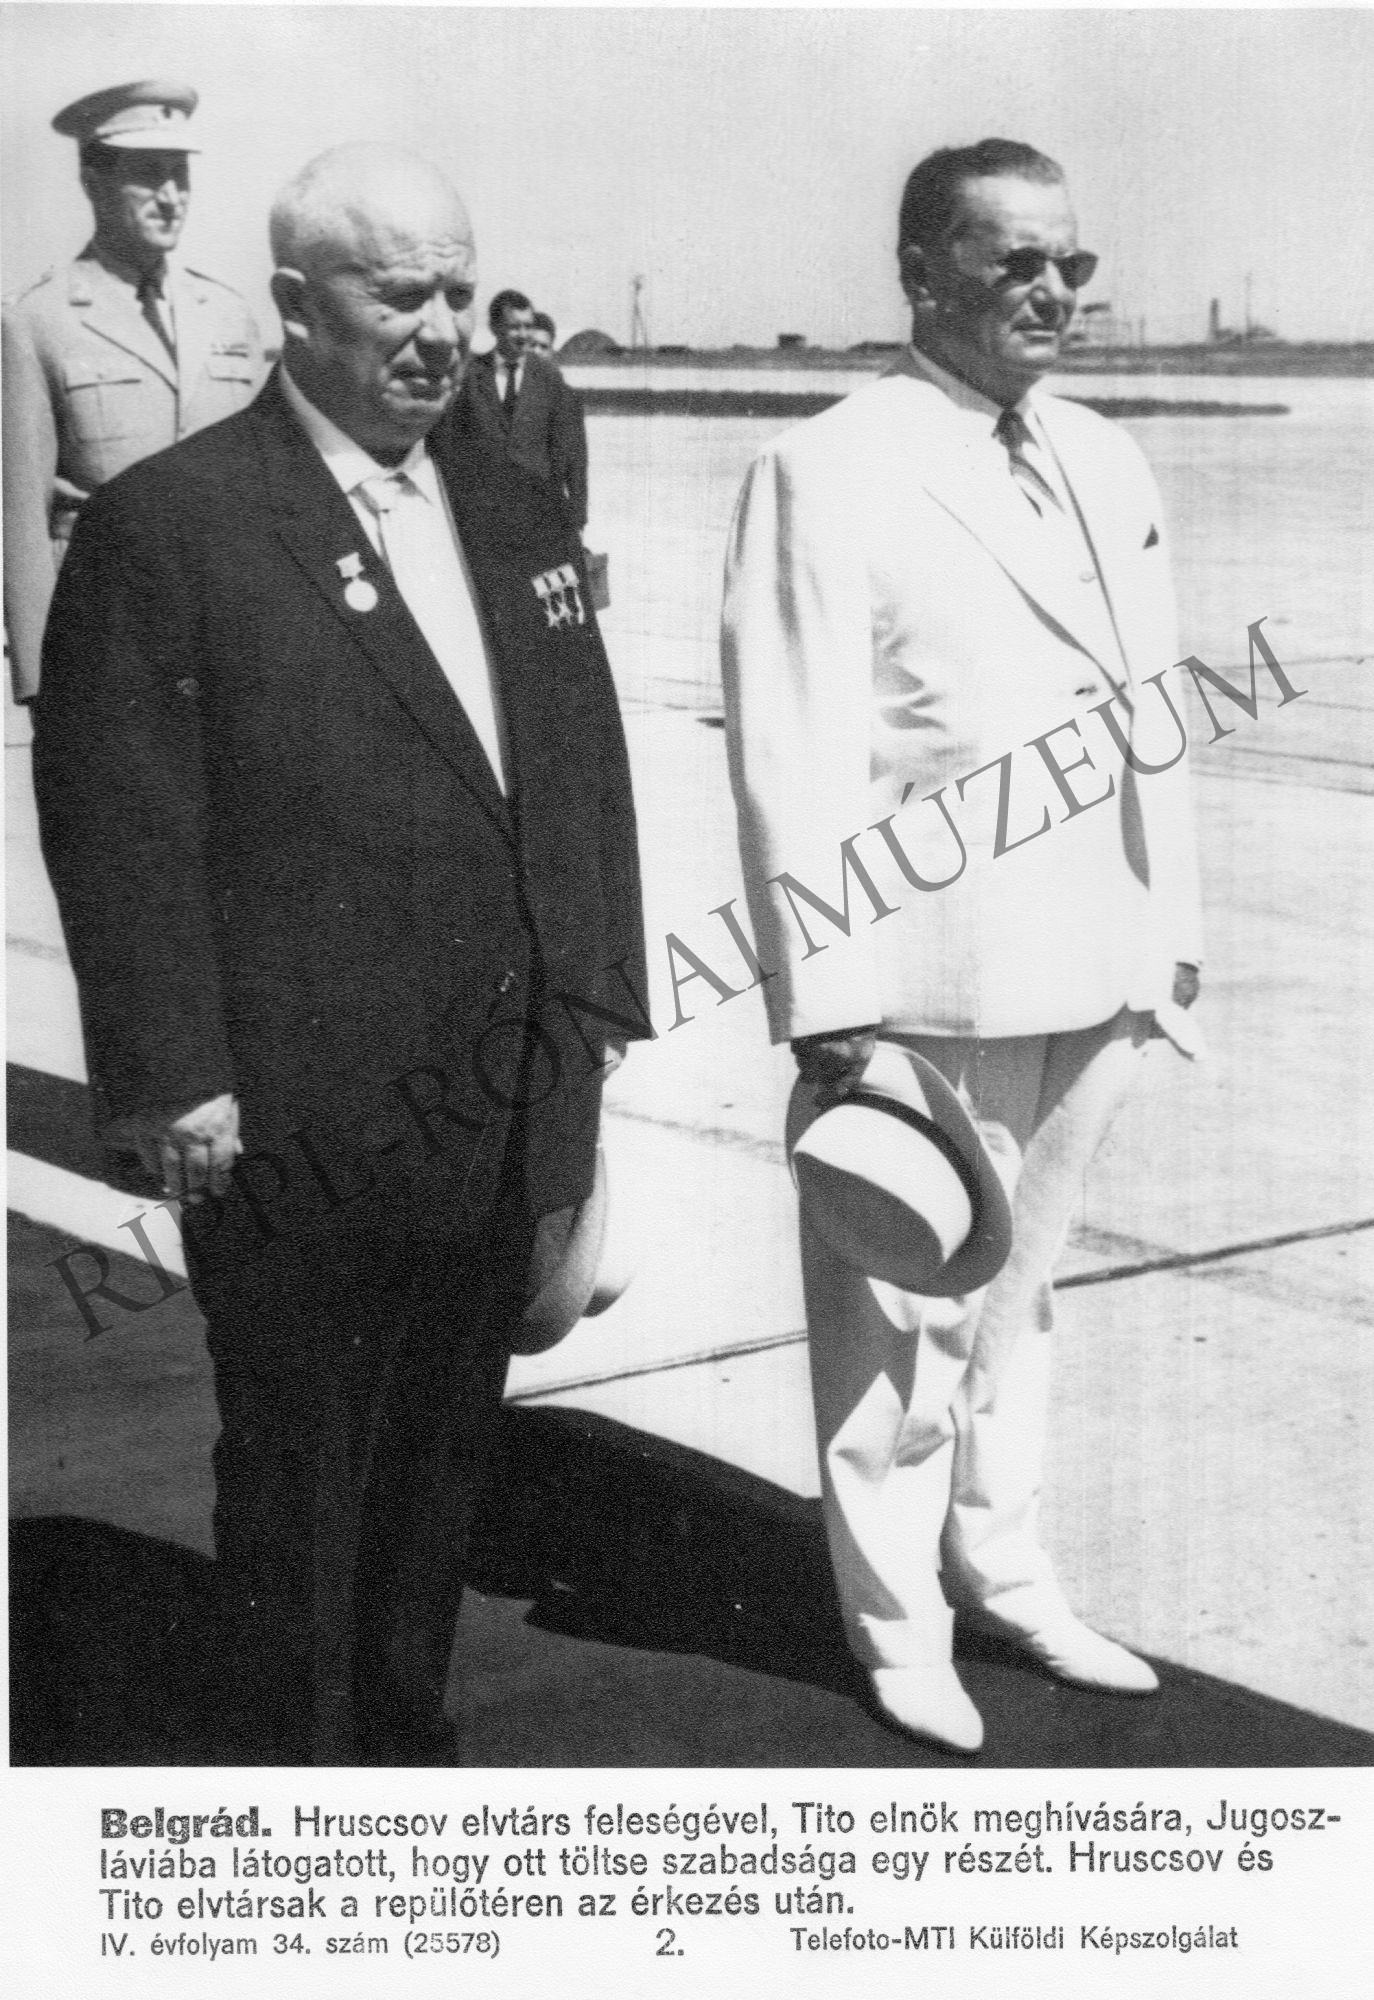 Hruscsov feleségével, Tito elnök meghívására, Jugoszláviába látogatott, hogy ott töltse szabadsága egy részét. (Rippl-Rónai Múzeum CC BY-NC-SA)